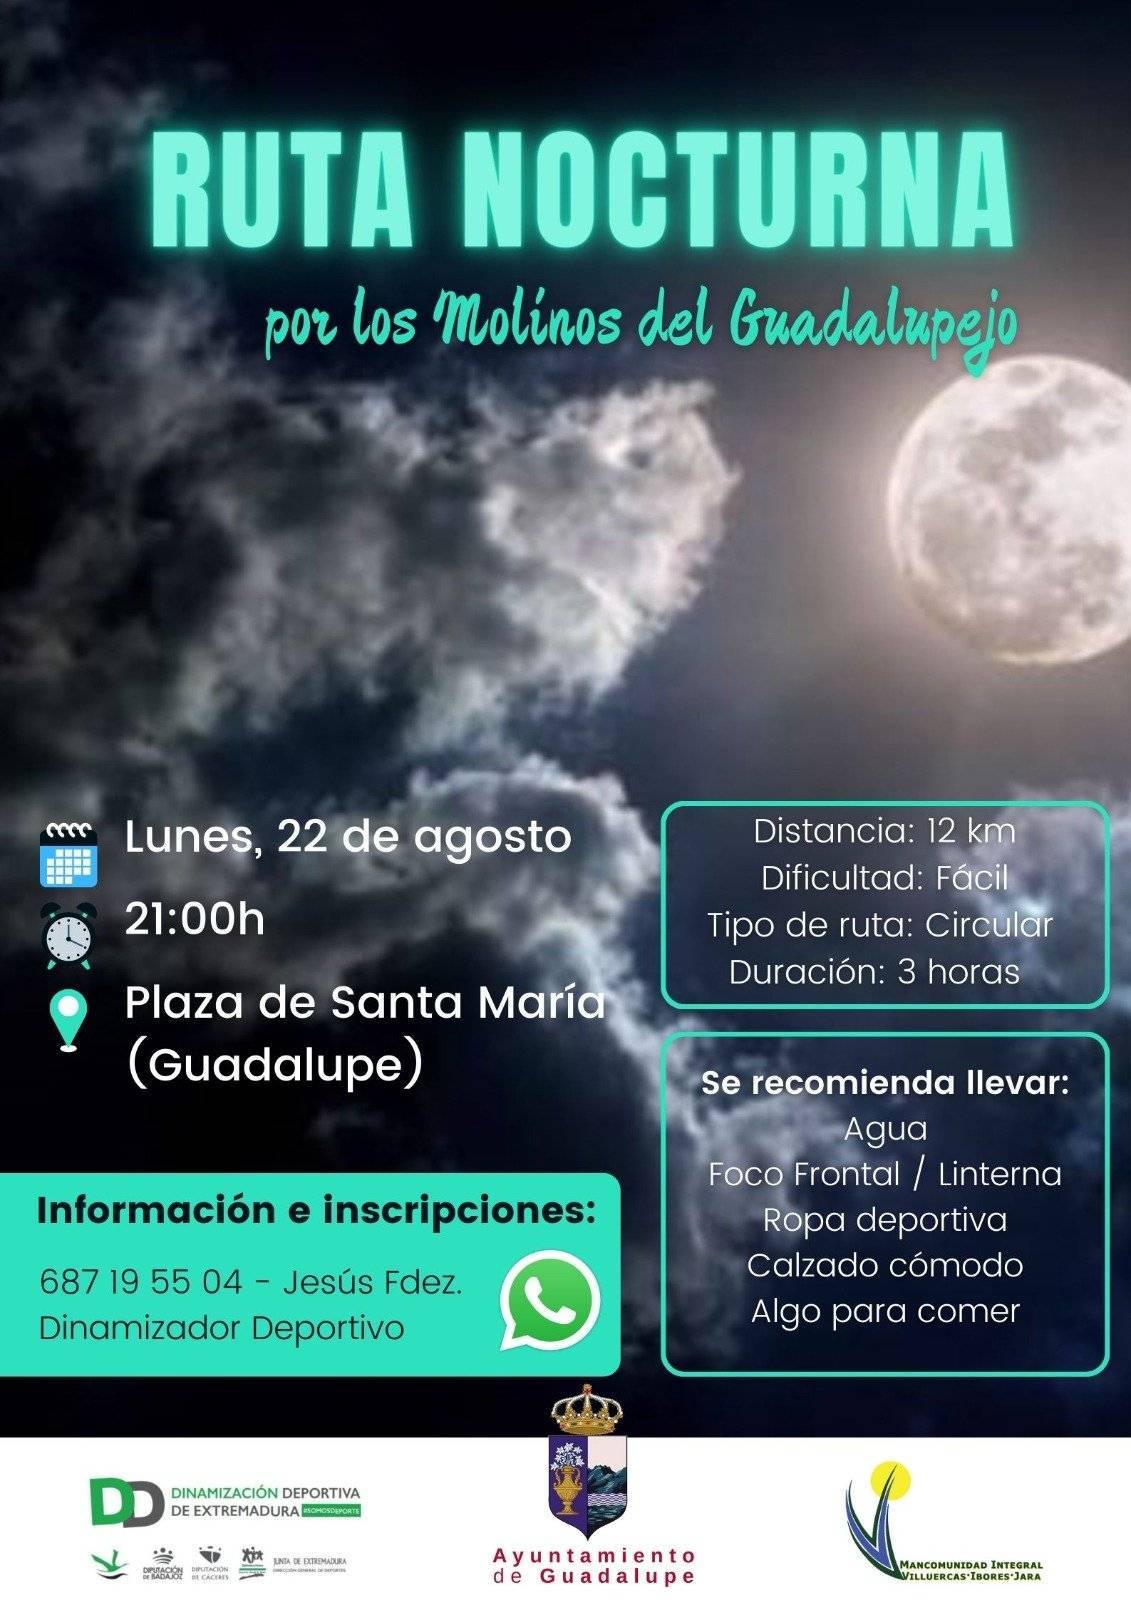 Ruta nocturna por los molinos del Guadalupejo (2022) - Guadalupe (Cáceres)